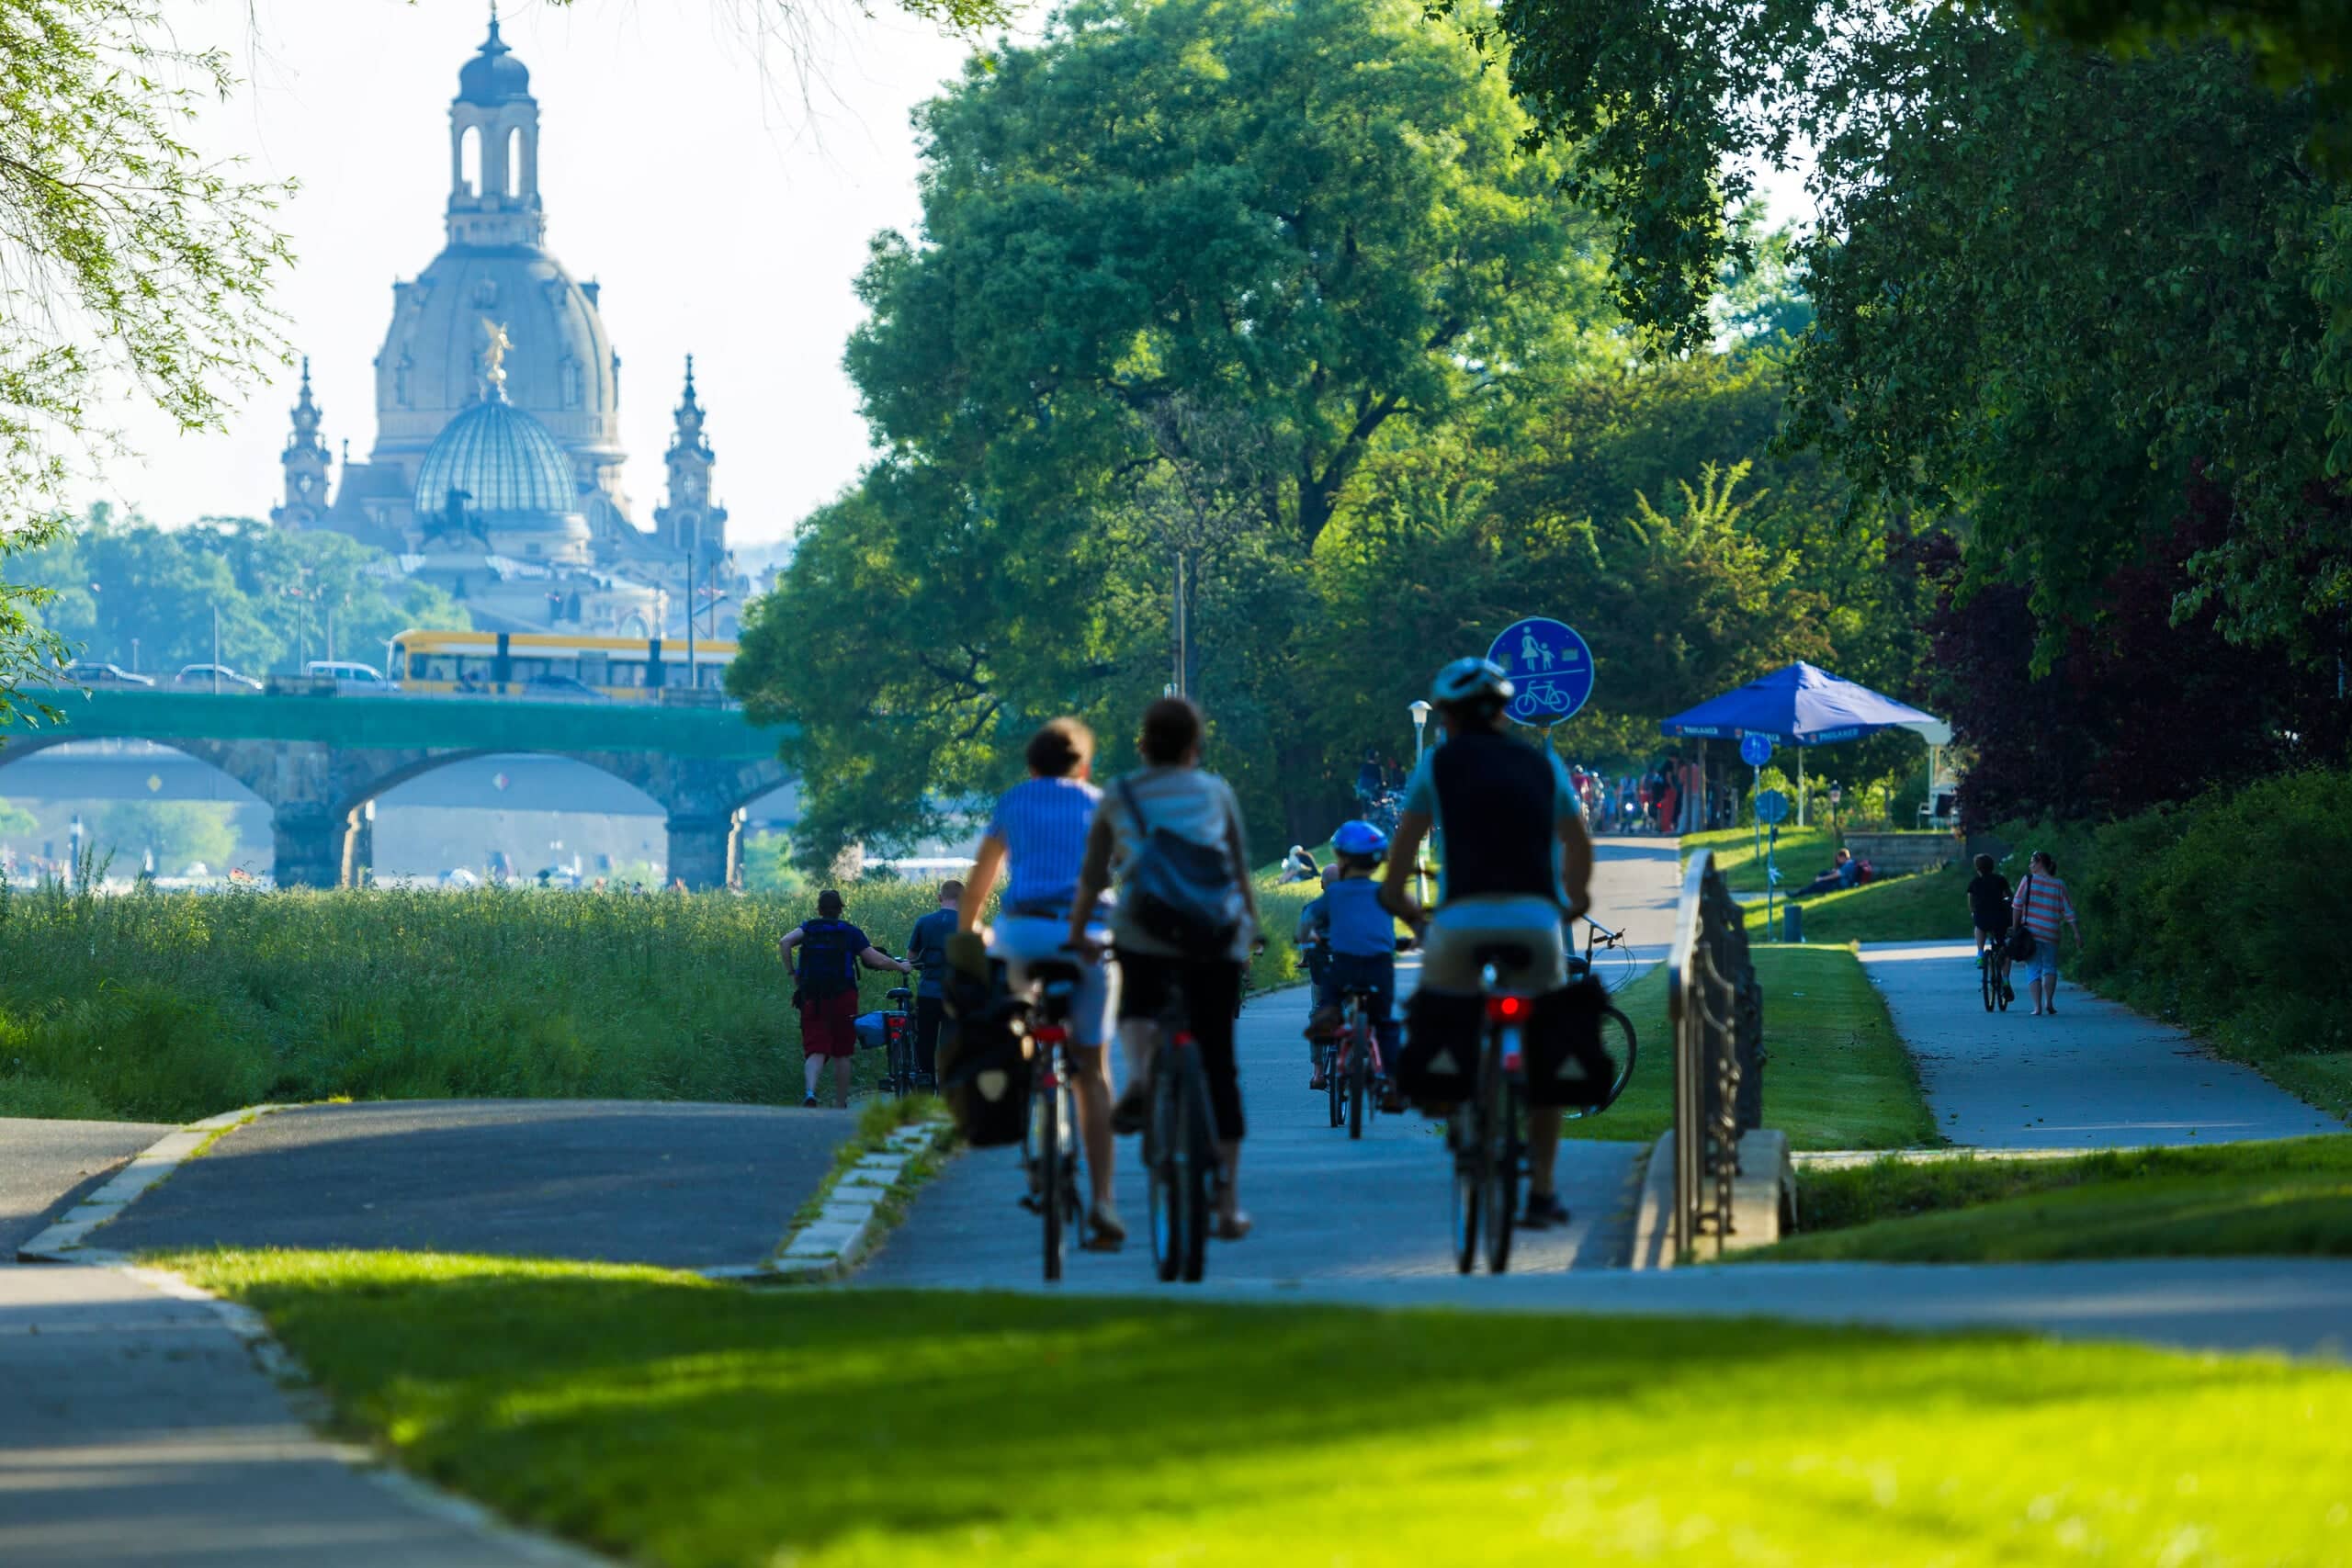 Der Elberadweg gehört zu Dresdens beliebtesten Fahrrad- und Wanderwegen. Mit dem Mobil-O-Mat möchte die Stadt weitere Ideen zur Mobilität der Zukunft sammeln. Photo: Sylvio Dittrich